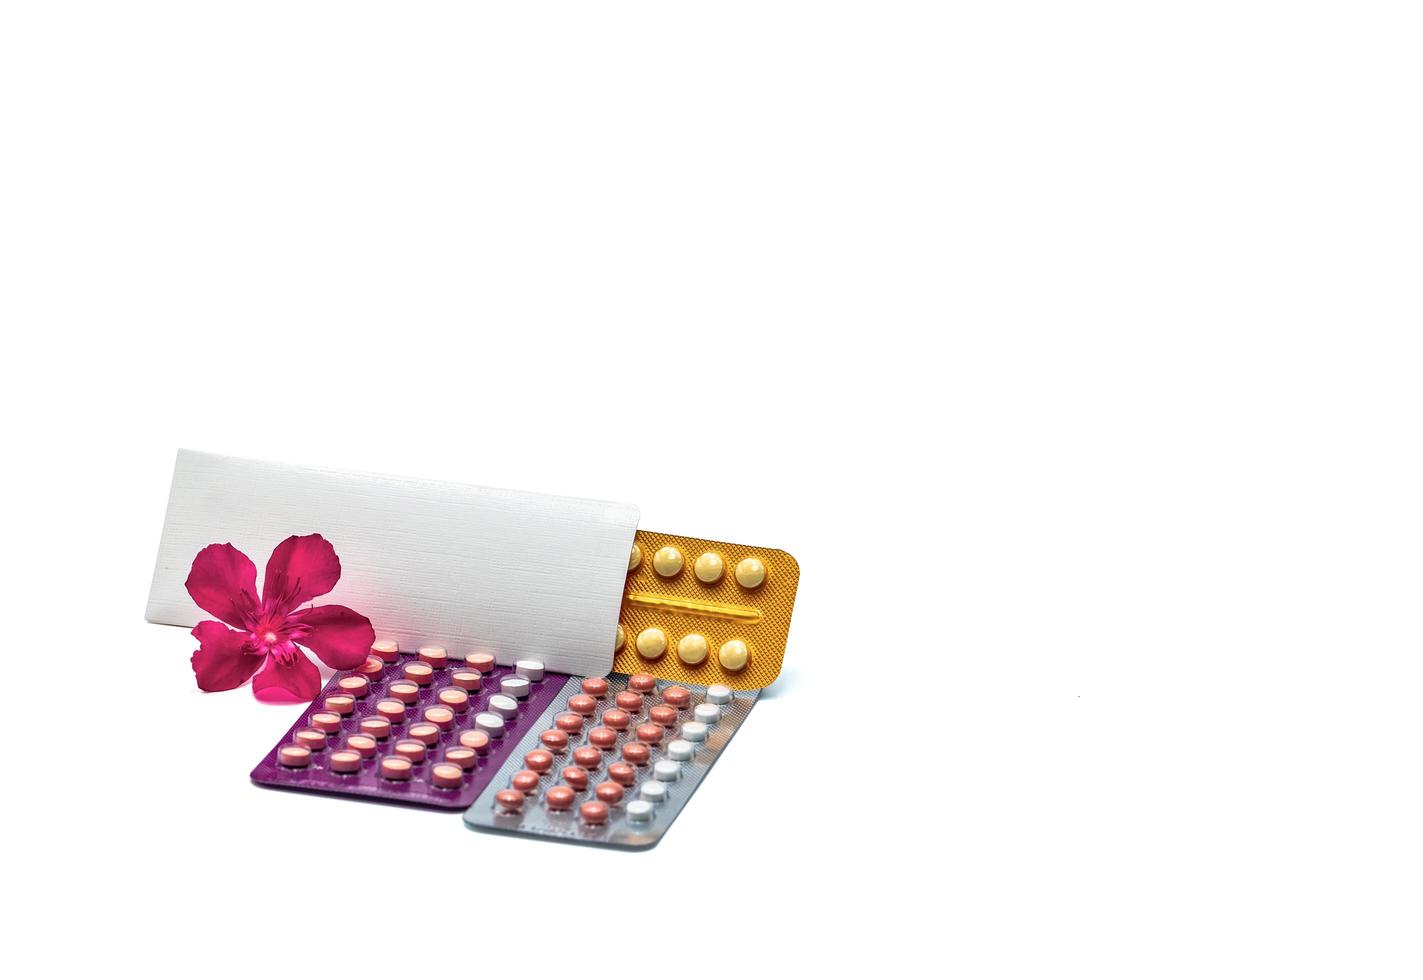 pilules contraceptives ou pilules contraceptives avec fleur rose sur fond blanc avec espace de copie. hormone pour la contraception. concept de planification familiale. comprimés ronds d'hormones sous blister. photo